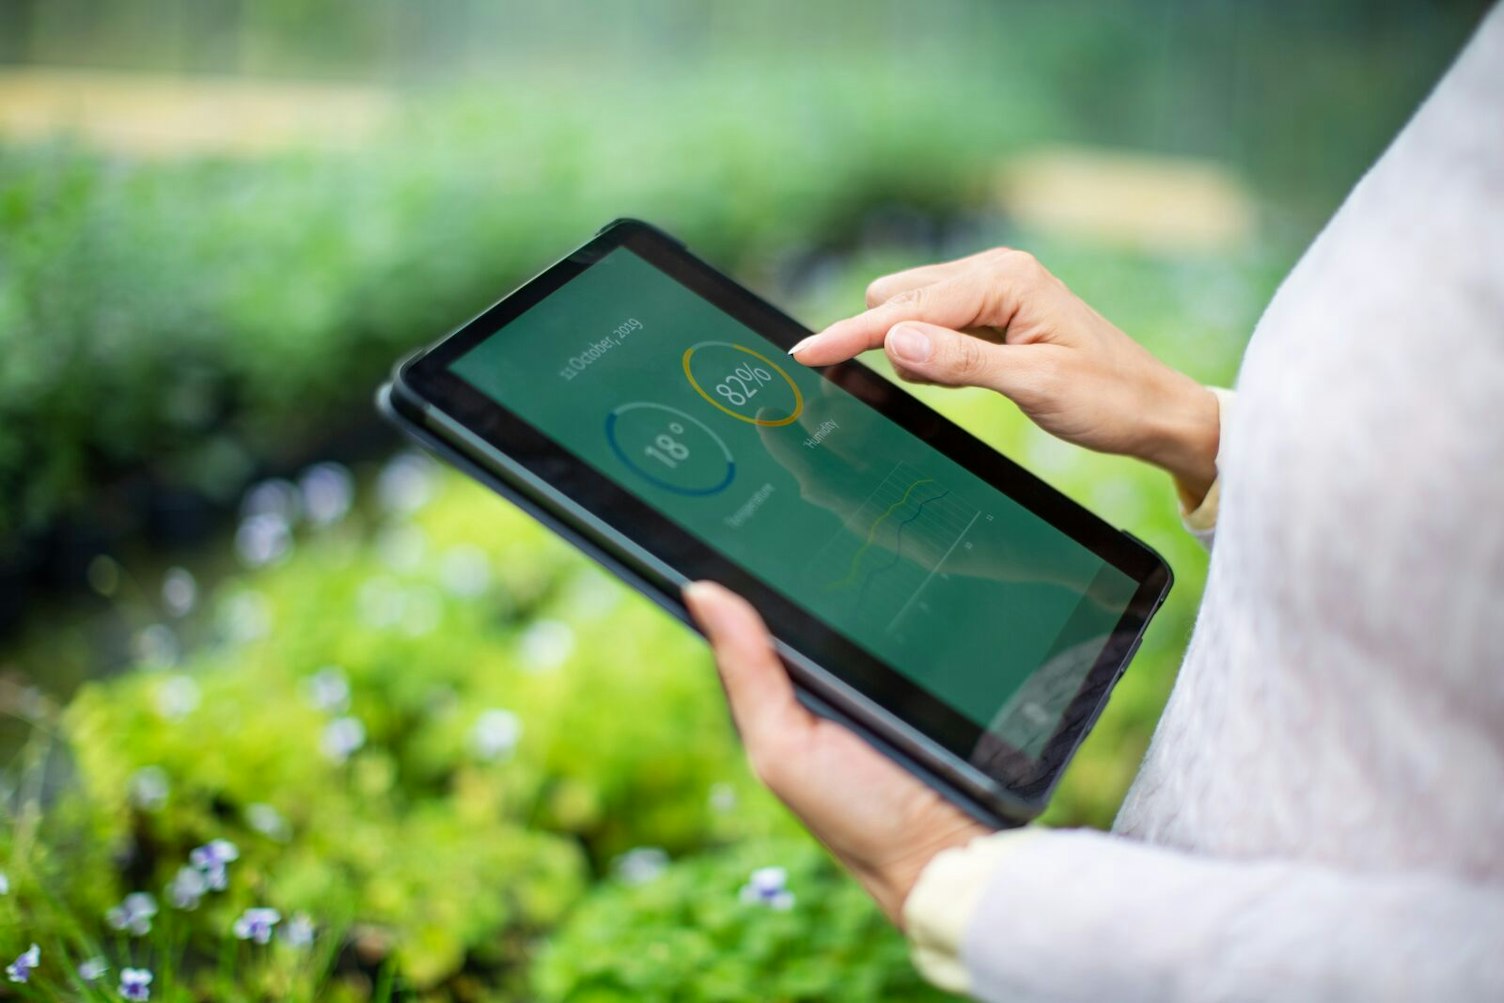 초점이 없는 온실에서 측정 시스템이 있는 디지털 태블릿을 사용하는 농업 과학자